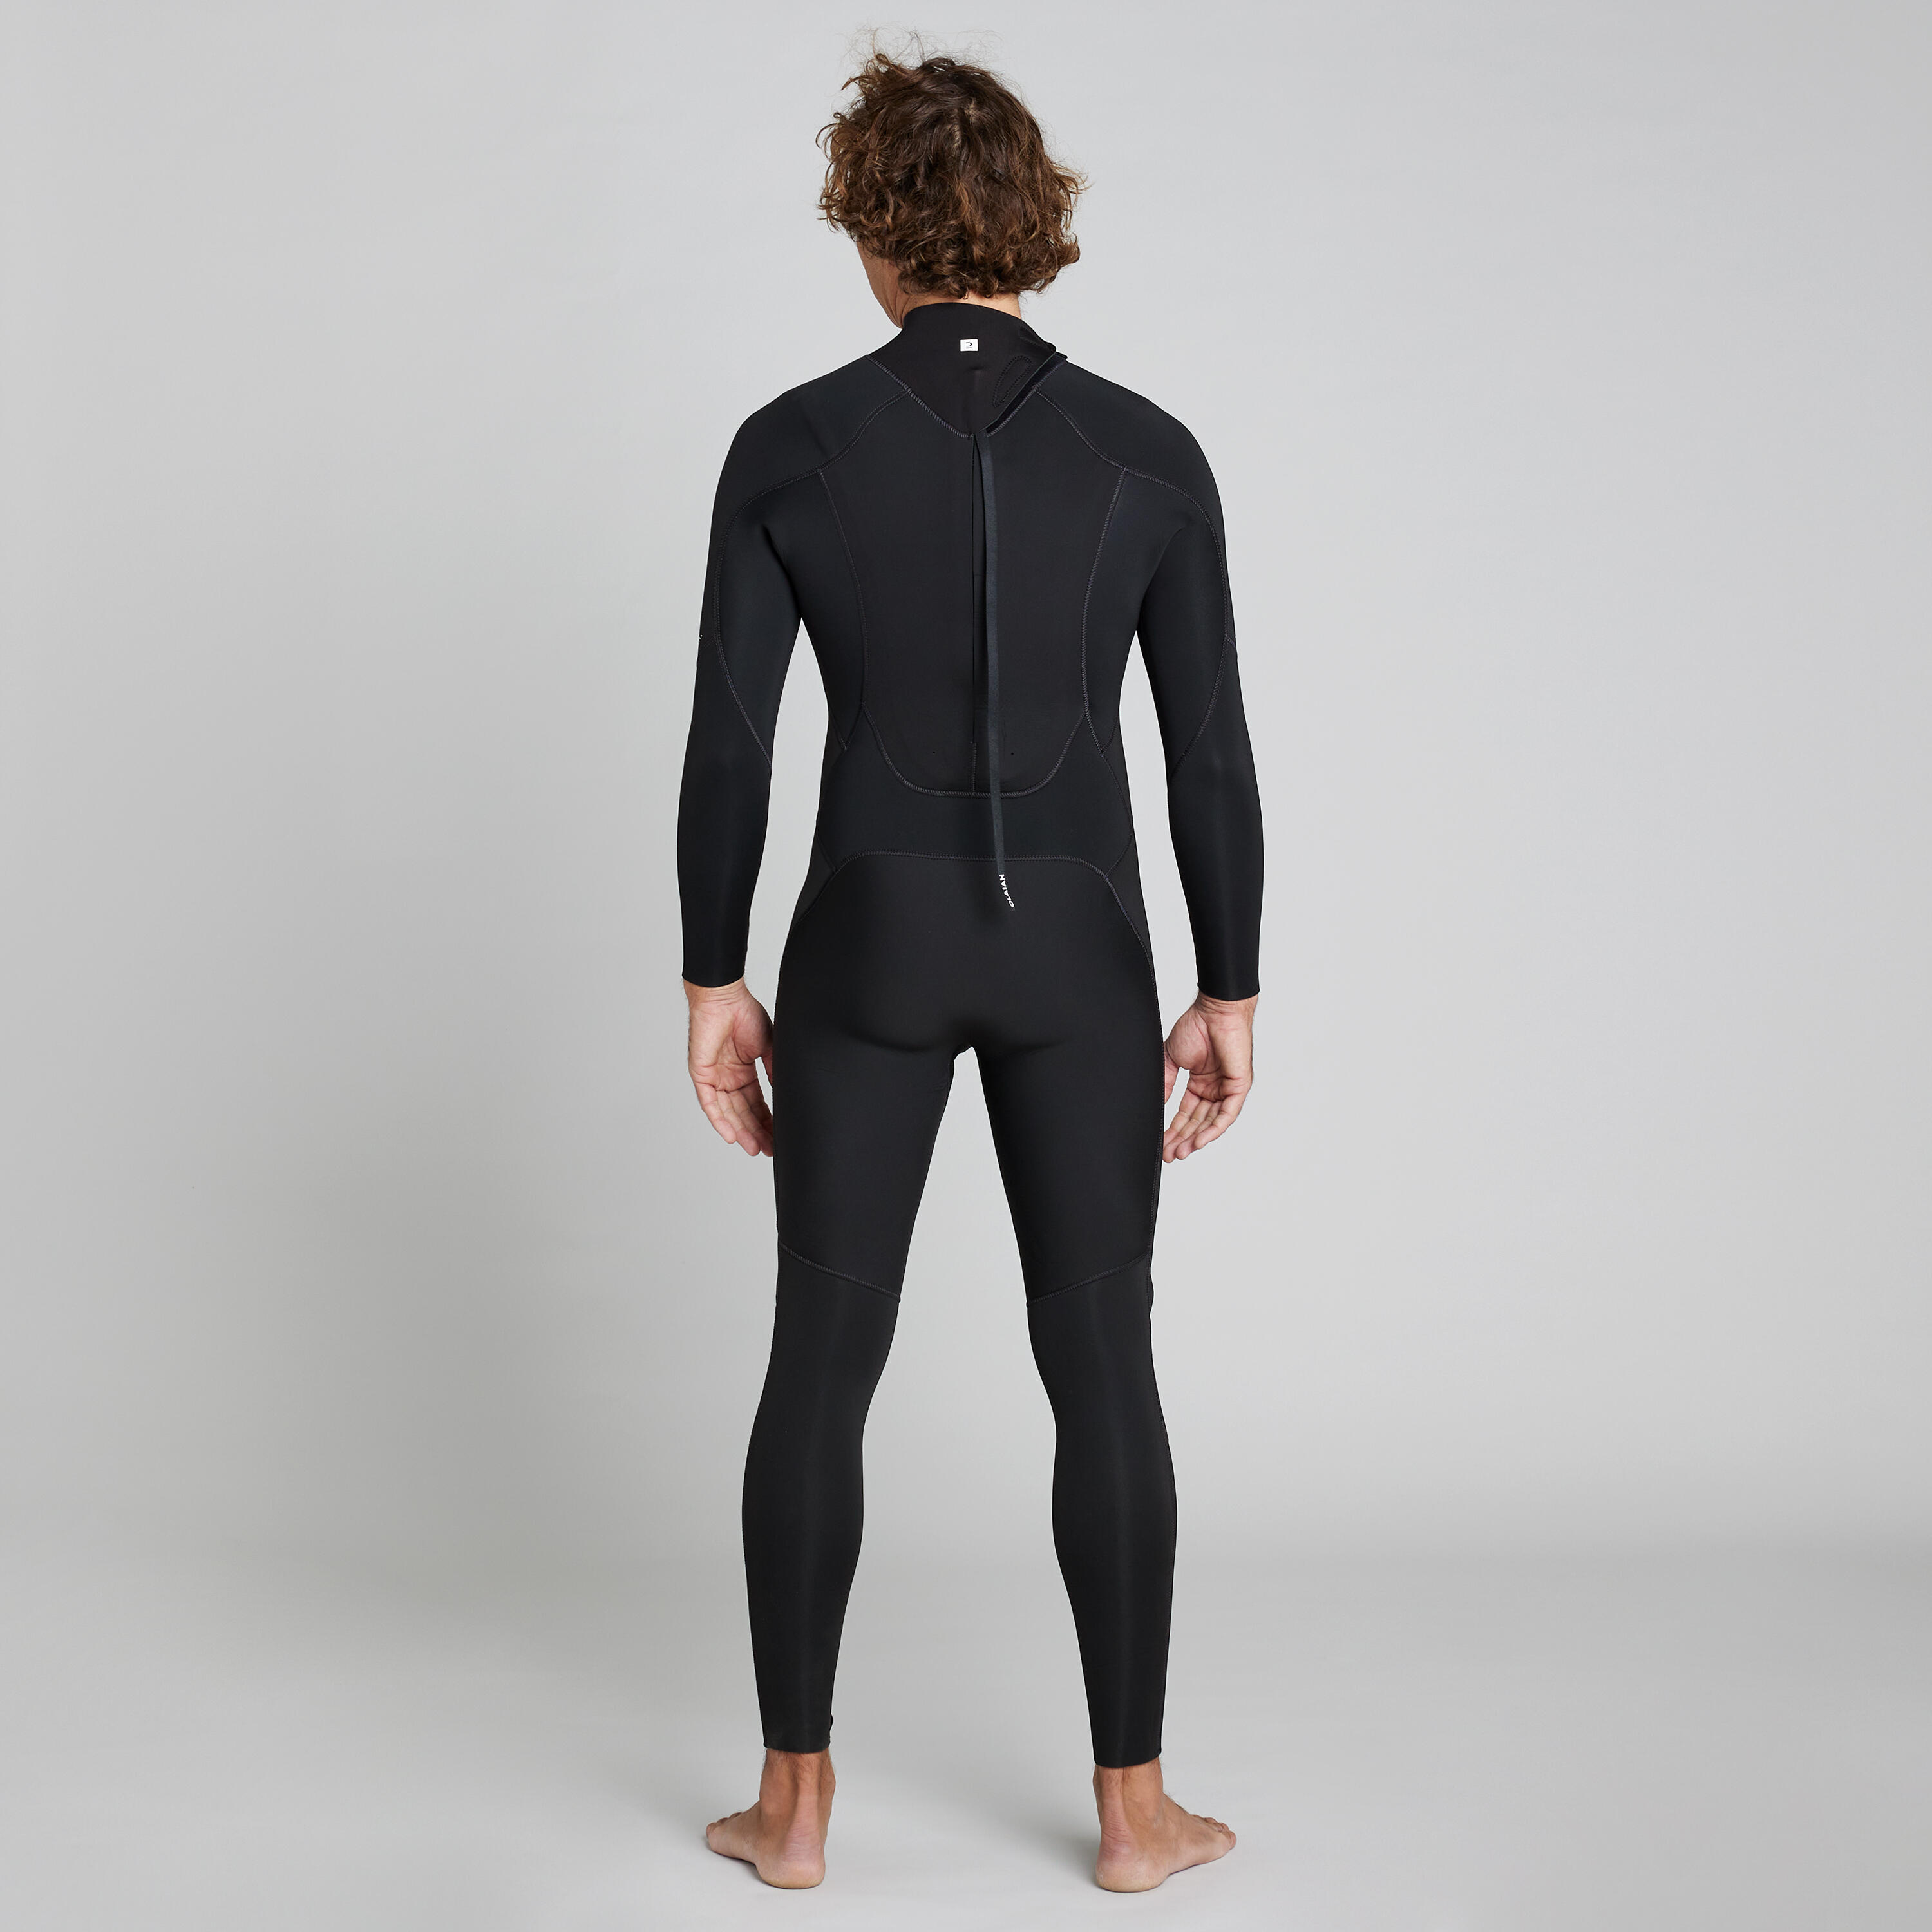 Men's 4/3 mm neoprene SURF 500 wetsuit black 12/13